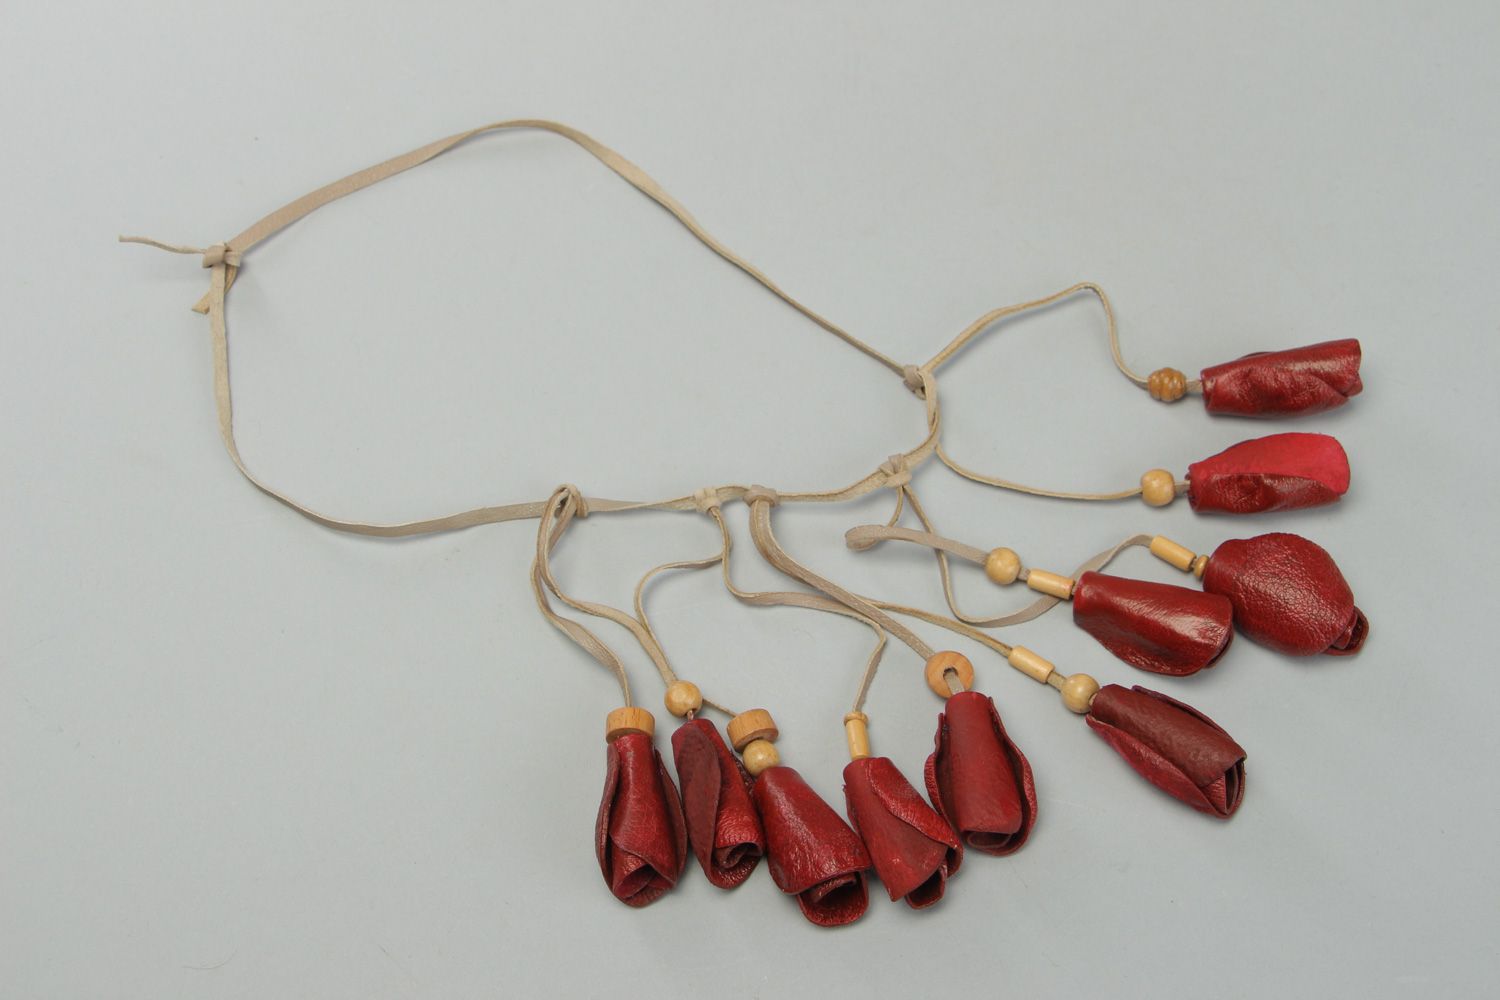 Collier en cuir et bois fait main écologique original rouge cadeau pour femme photo 1